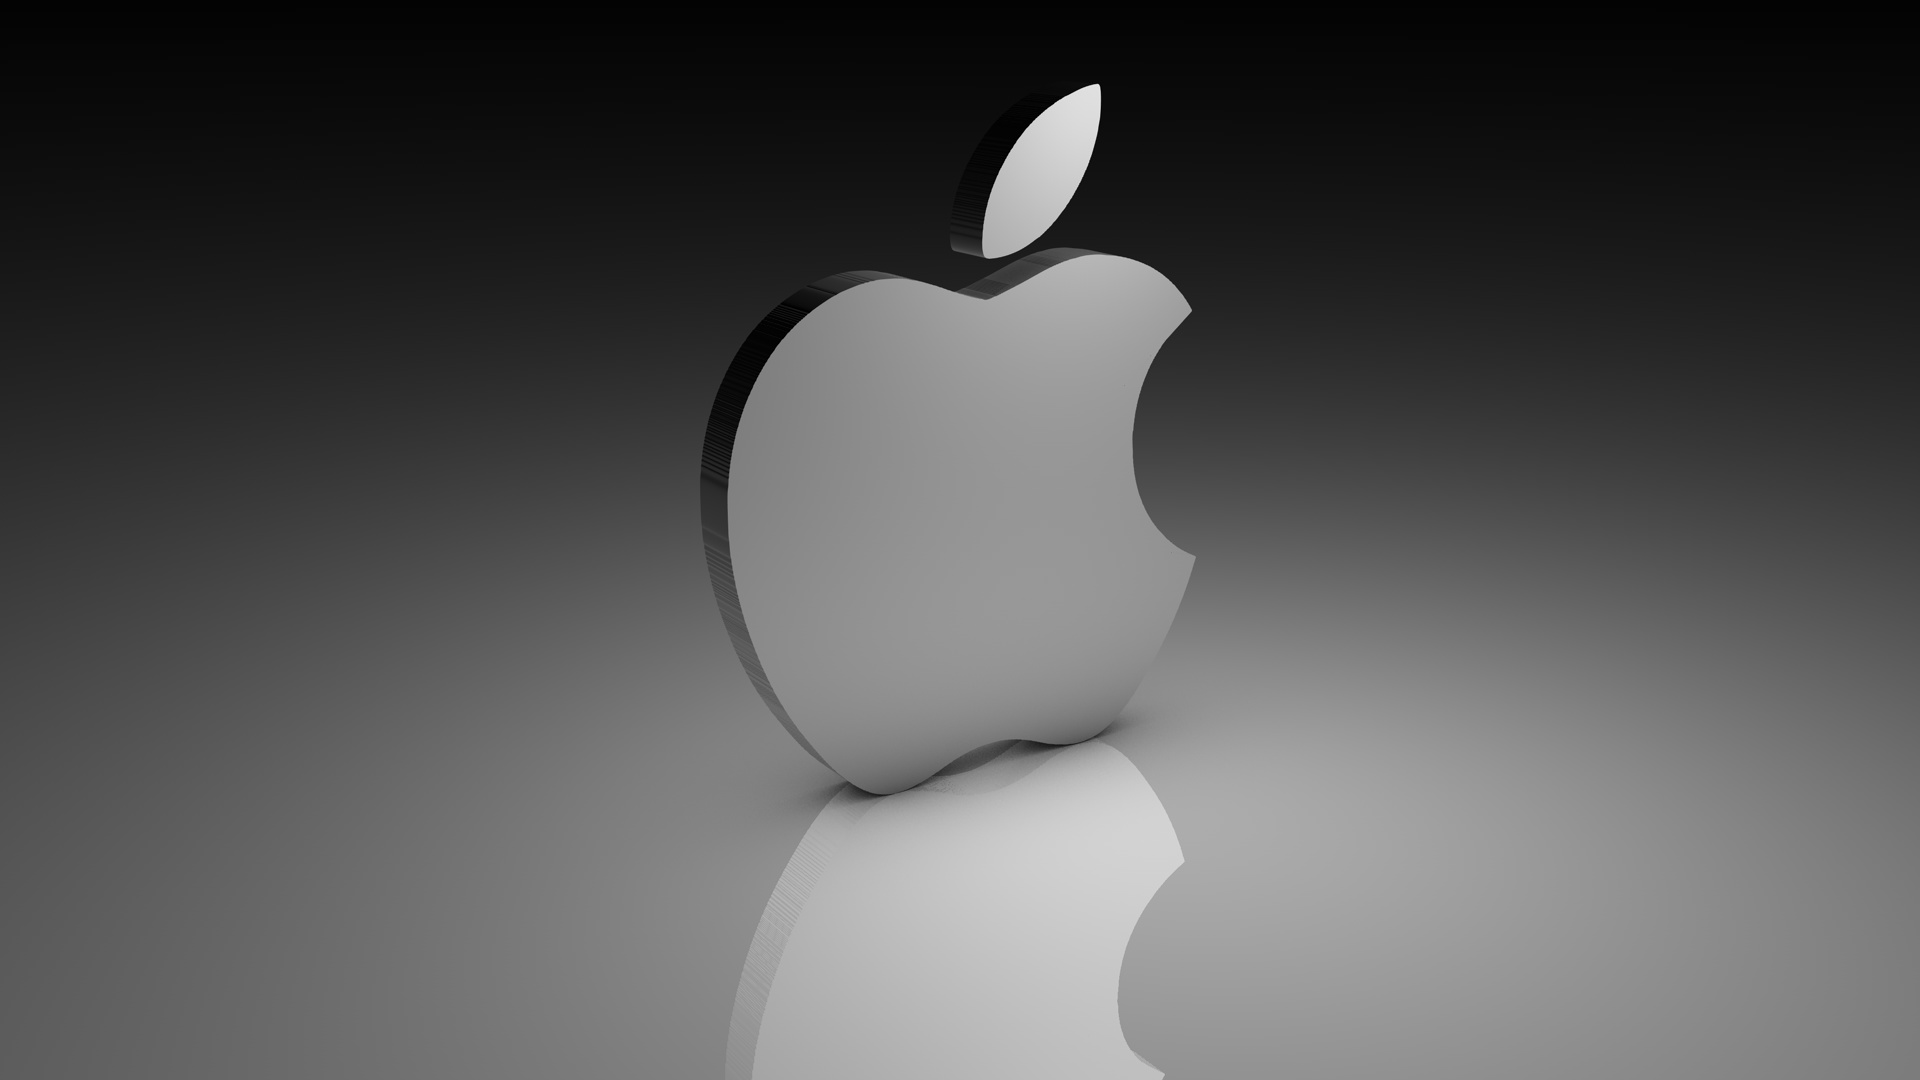 Apple Logo Wallpaper Hd 1080p For Mobile